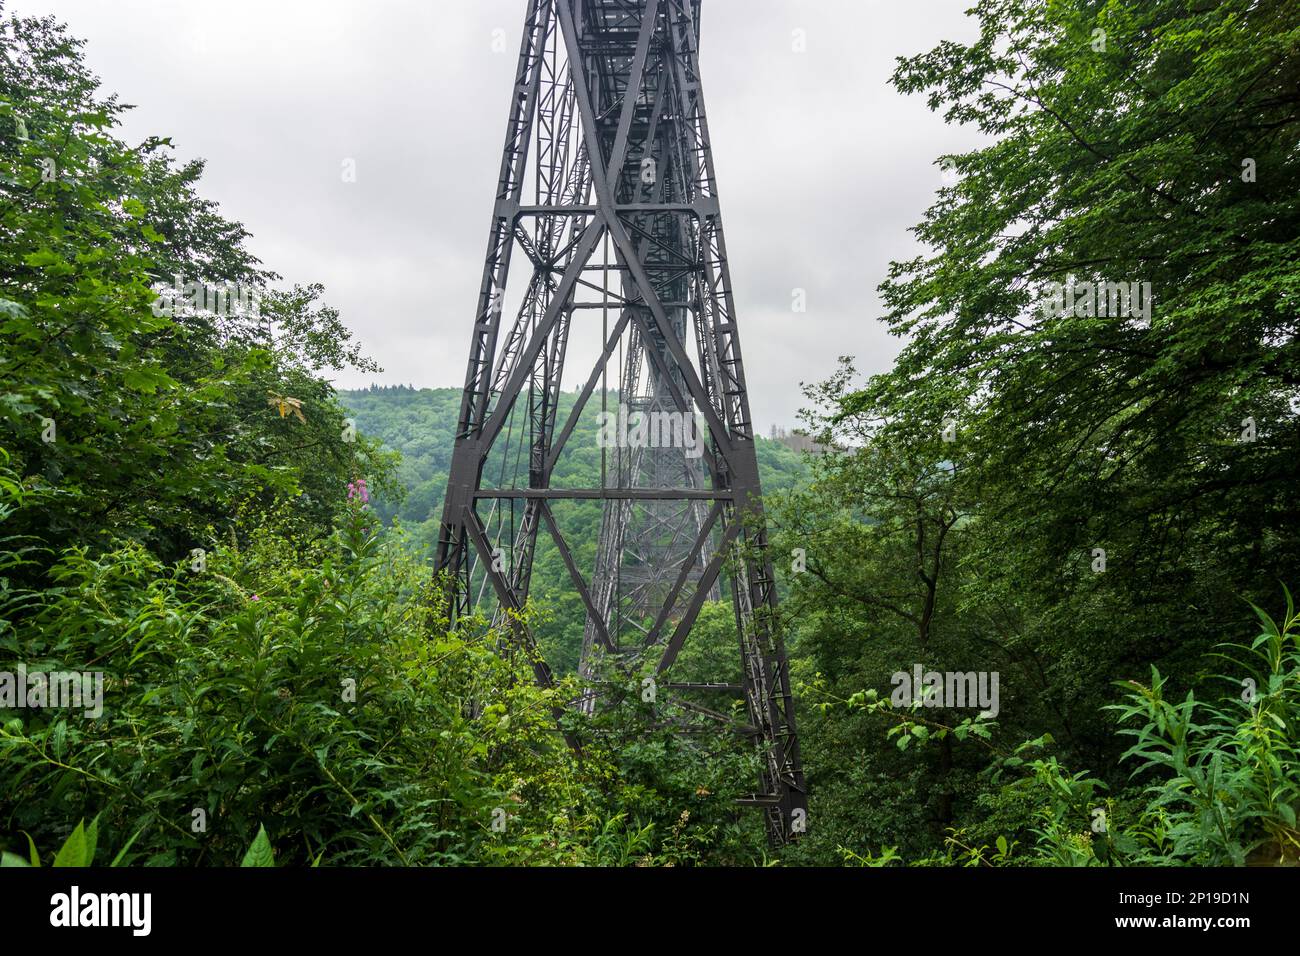 Solingen: Müngstener Brücke (Müngsten Bridge) in Bergisches Land, Nordrhein-Westfalen, North Rhine-Westphalia, Germany Stock Photo